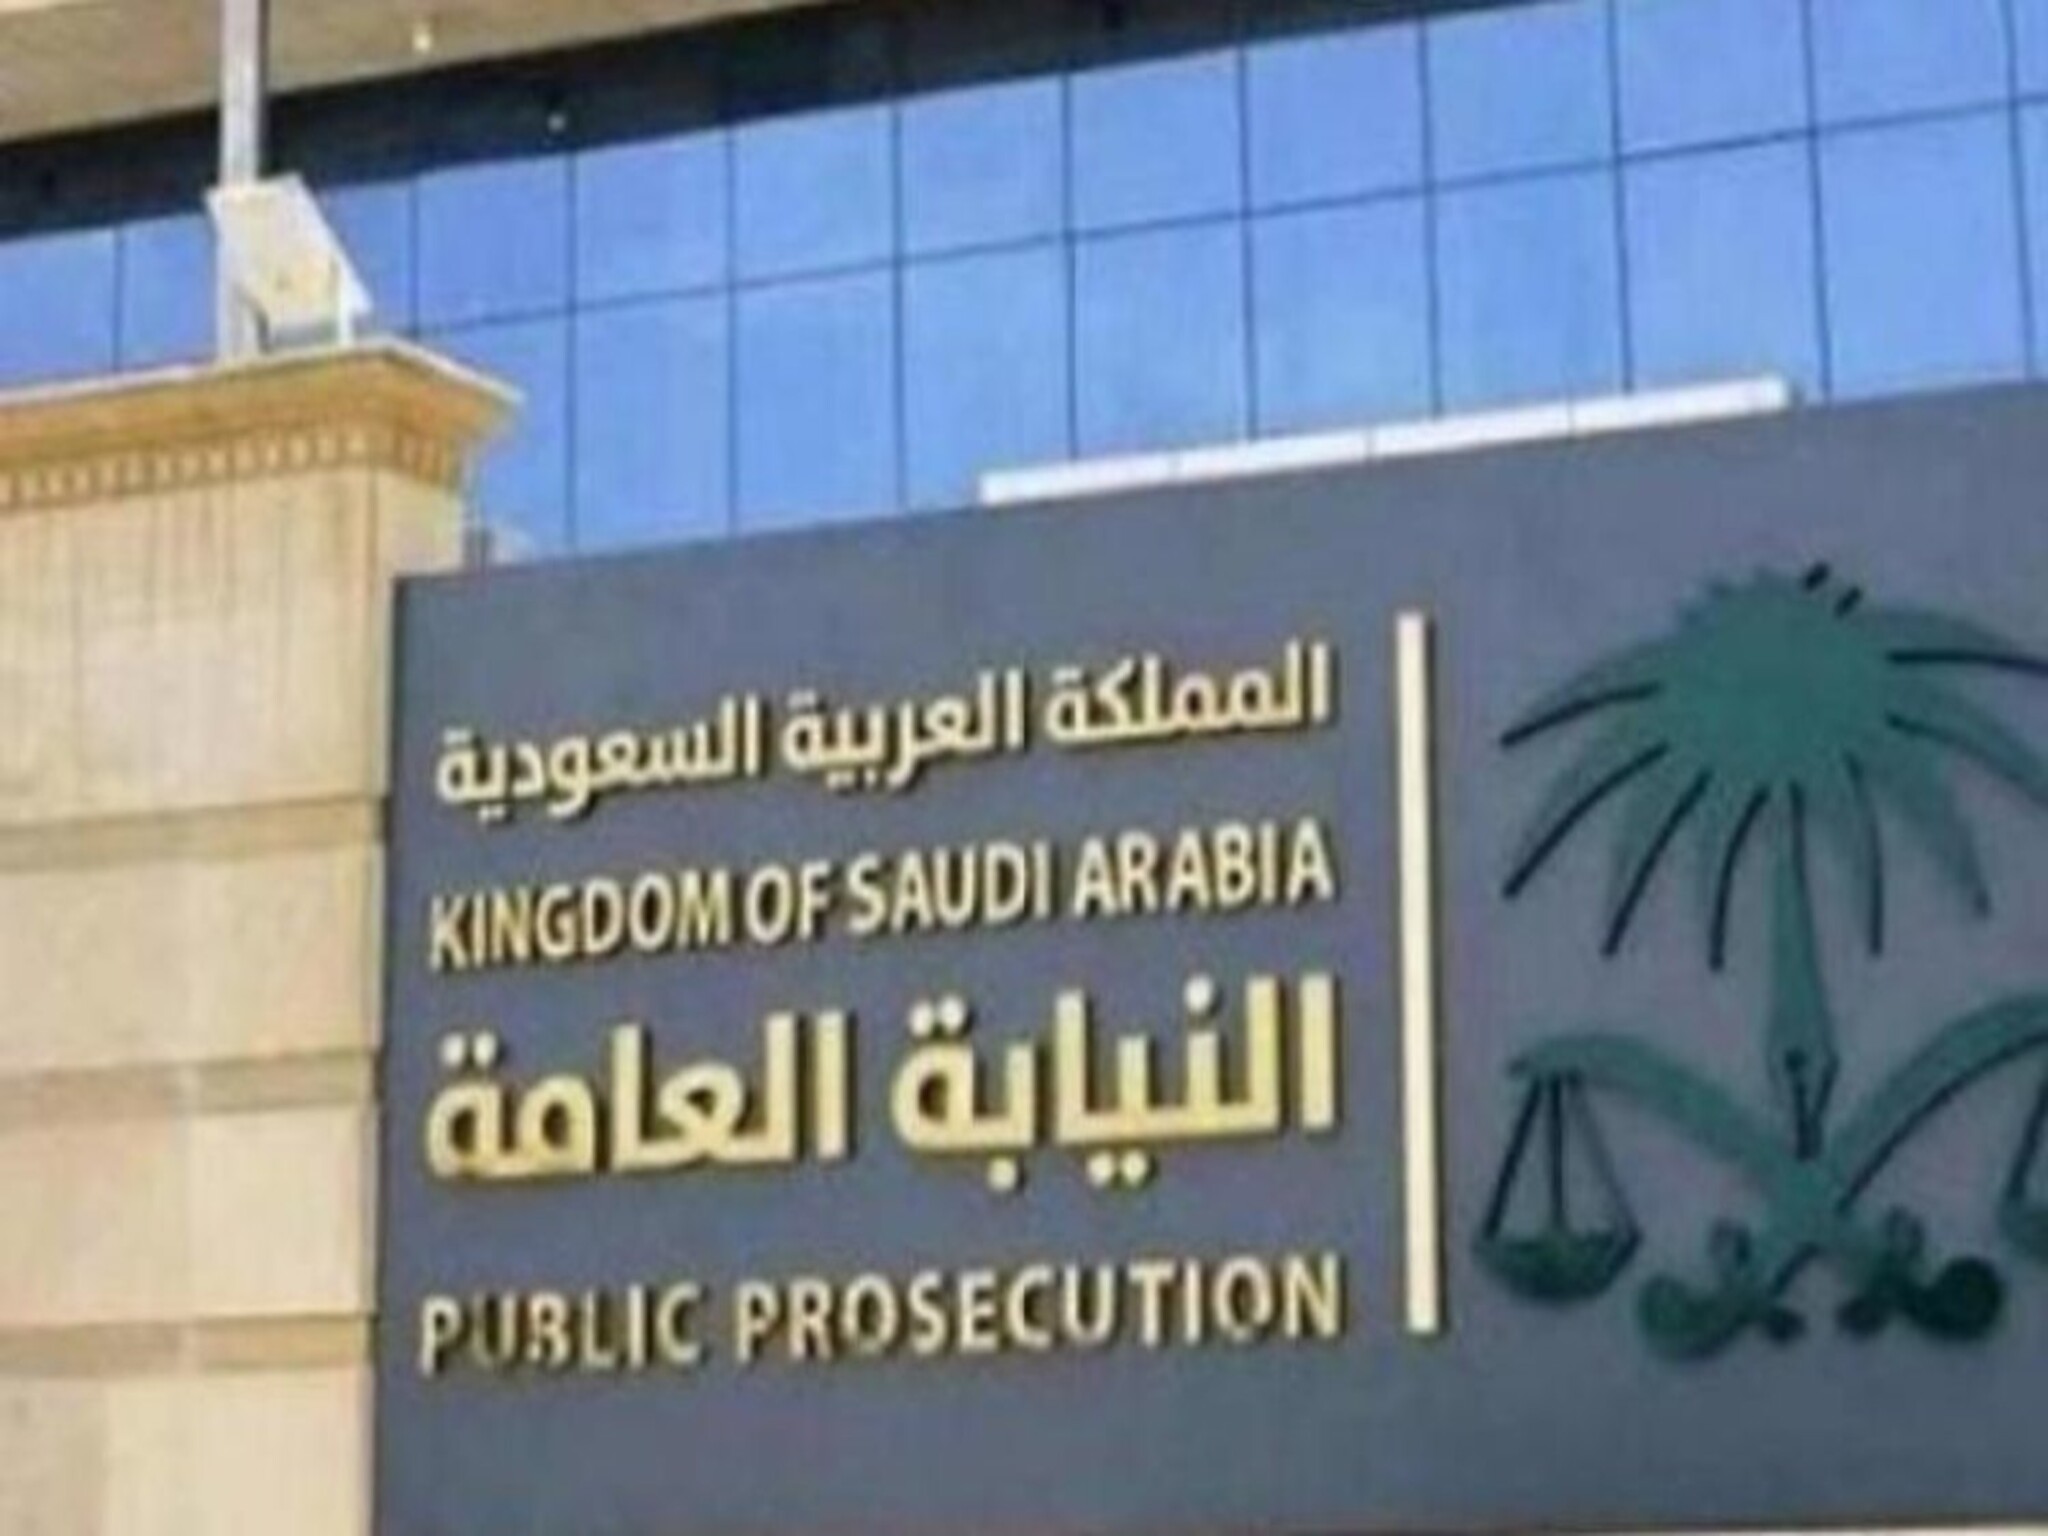 النيابة العامة بالسعودية تضبط وافد وثلاثة مواطنين بتهمة غسيل الأموال